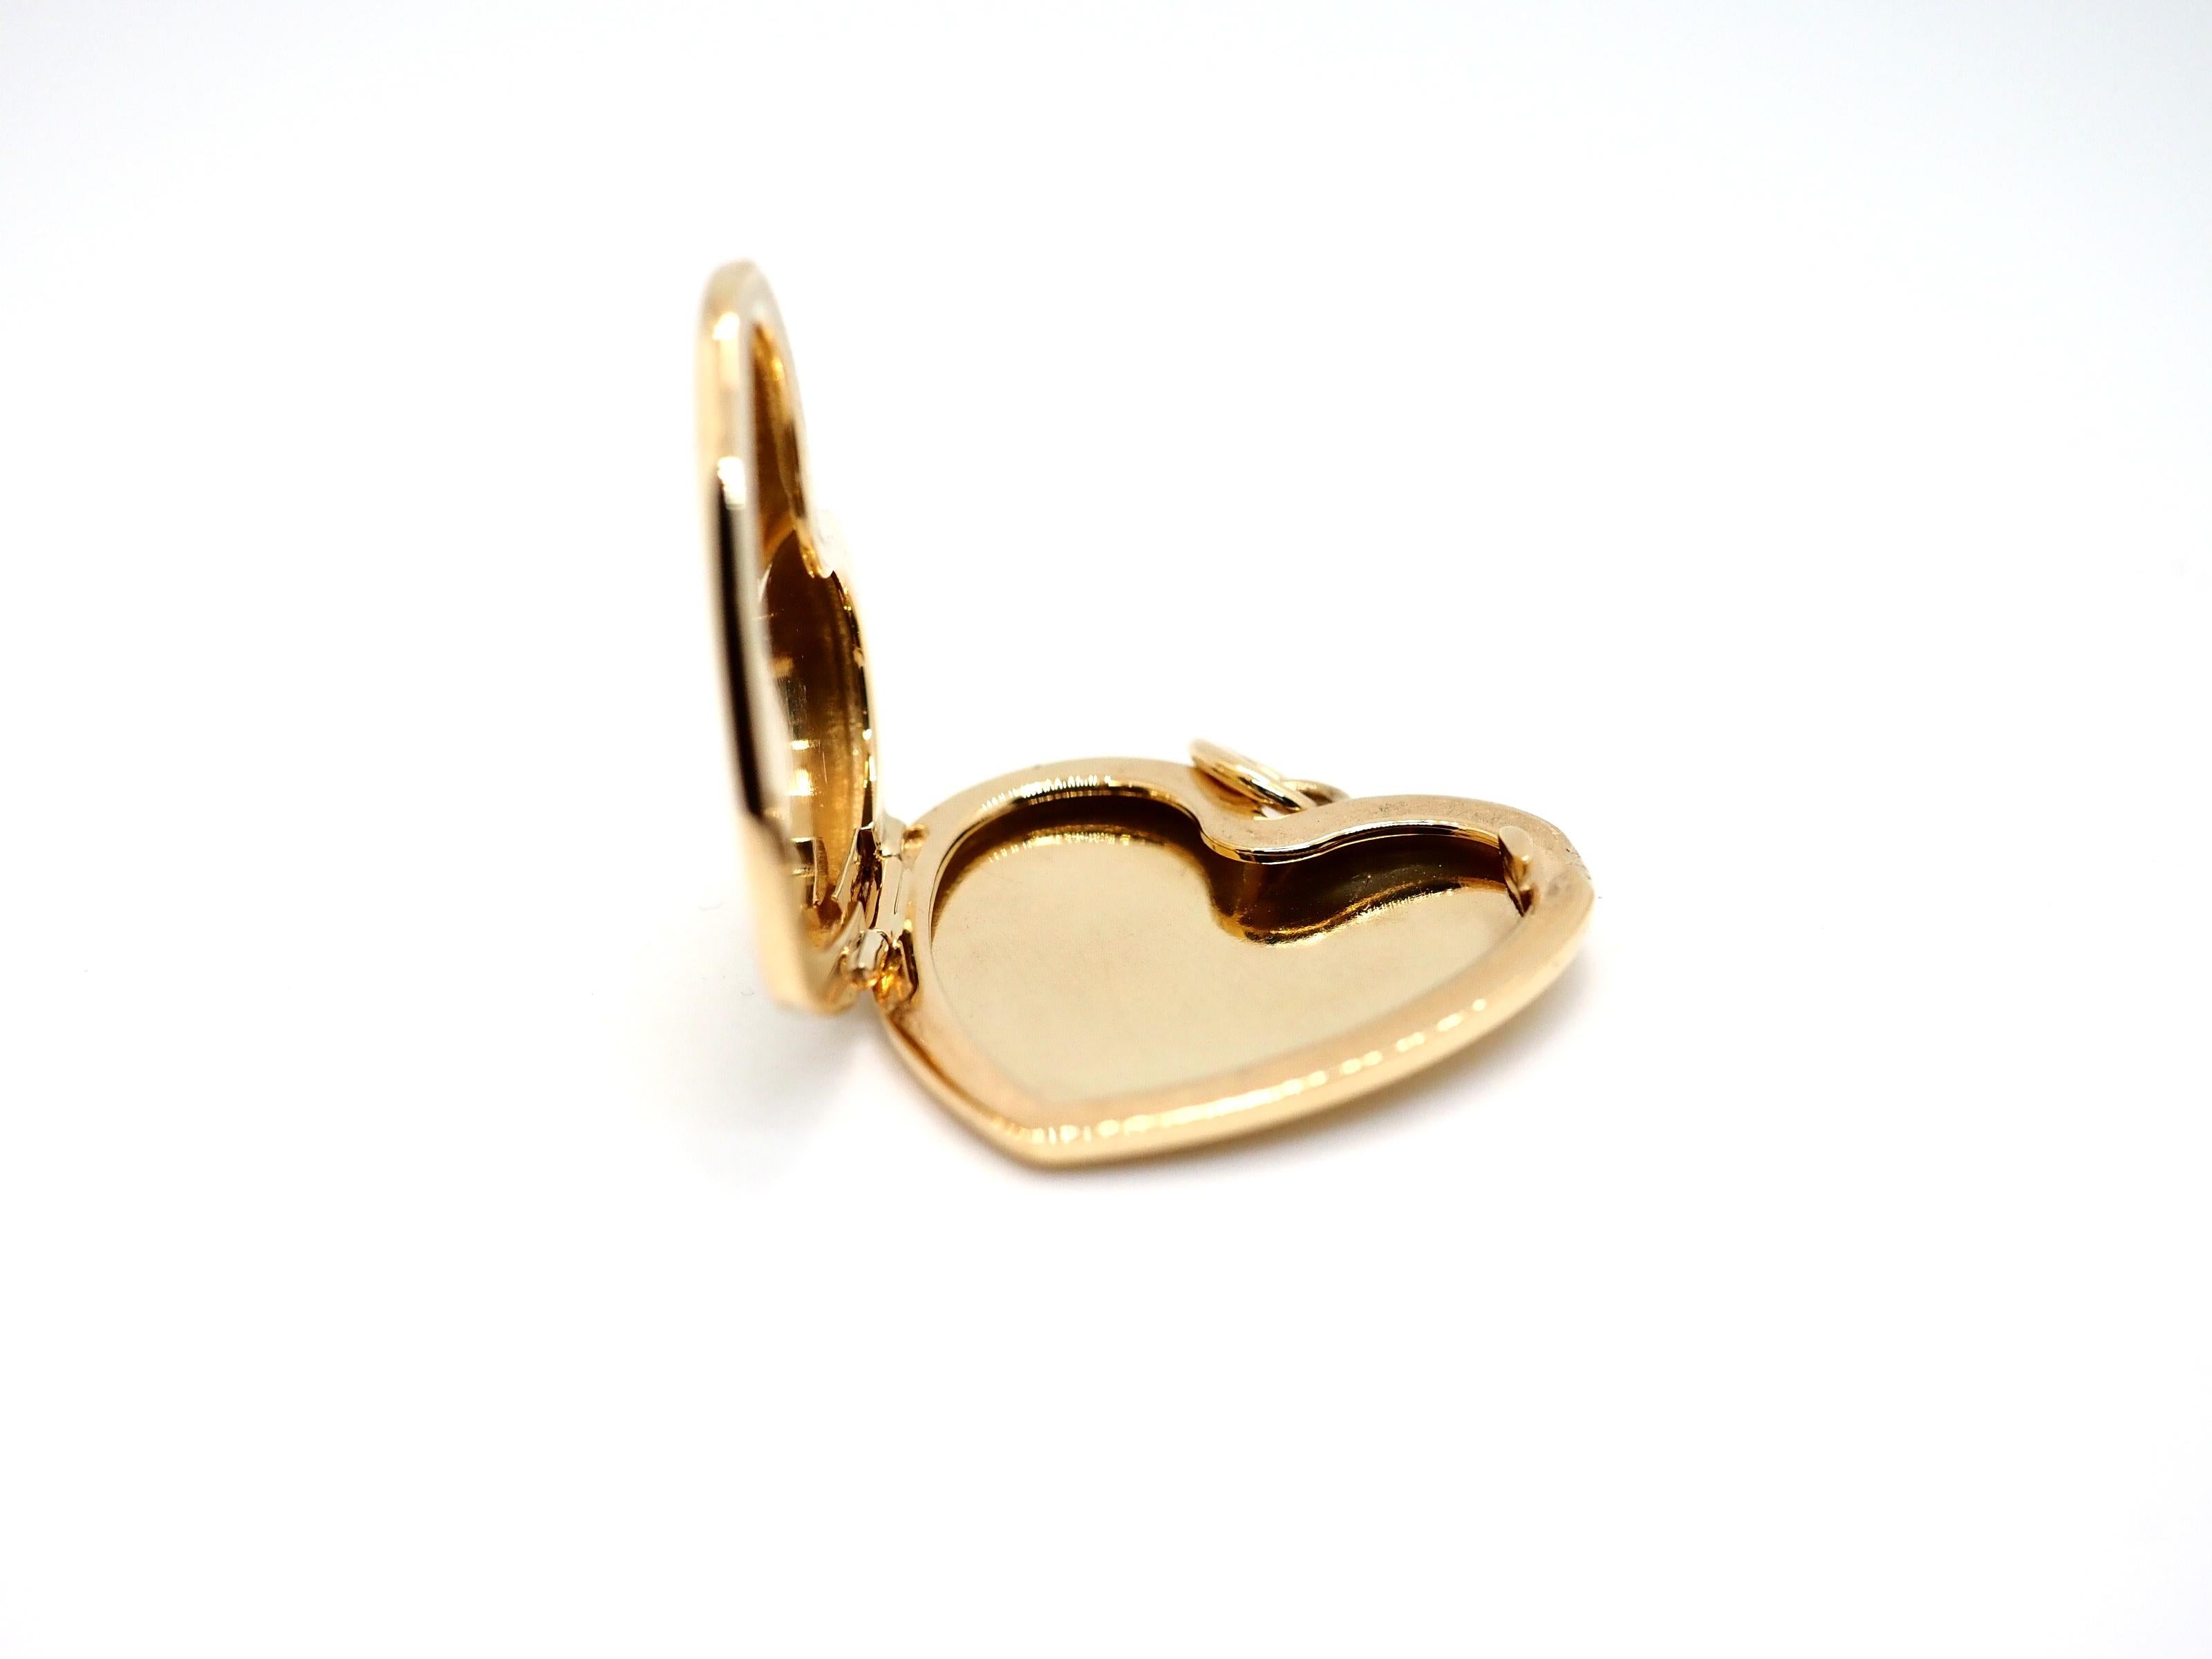 tiffany gold heart locket